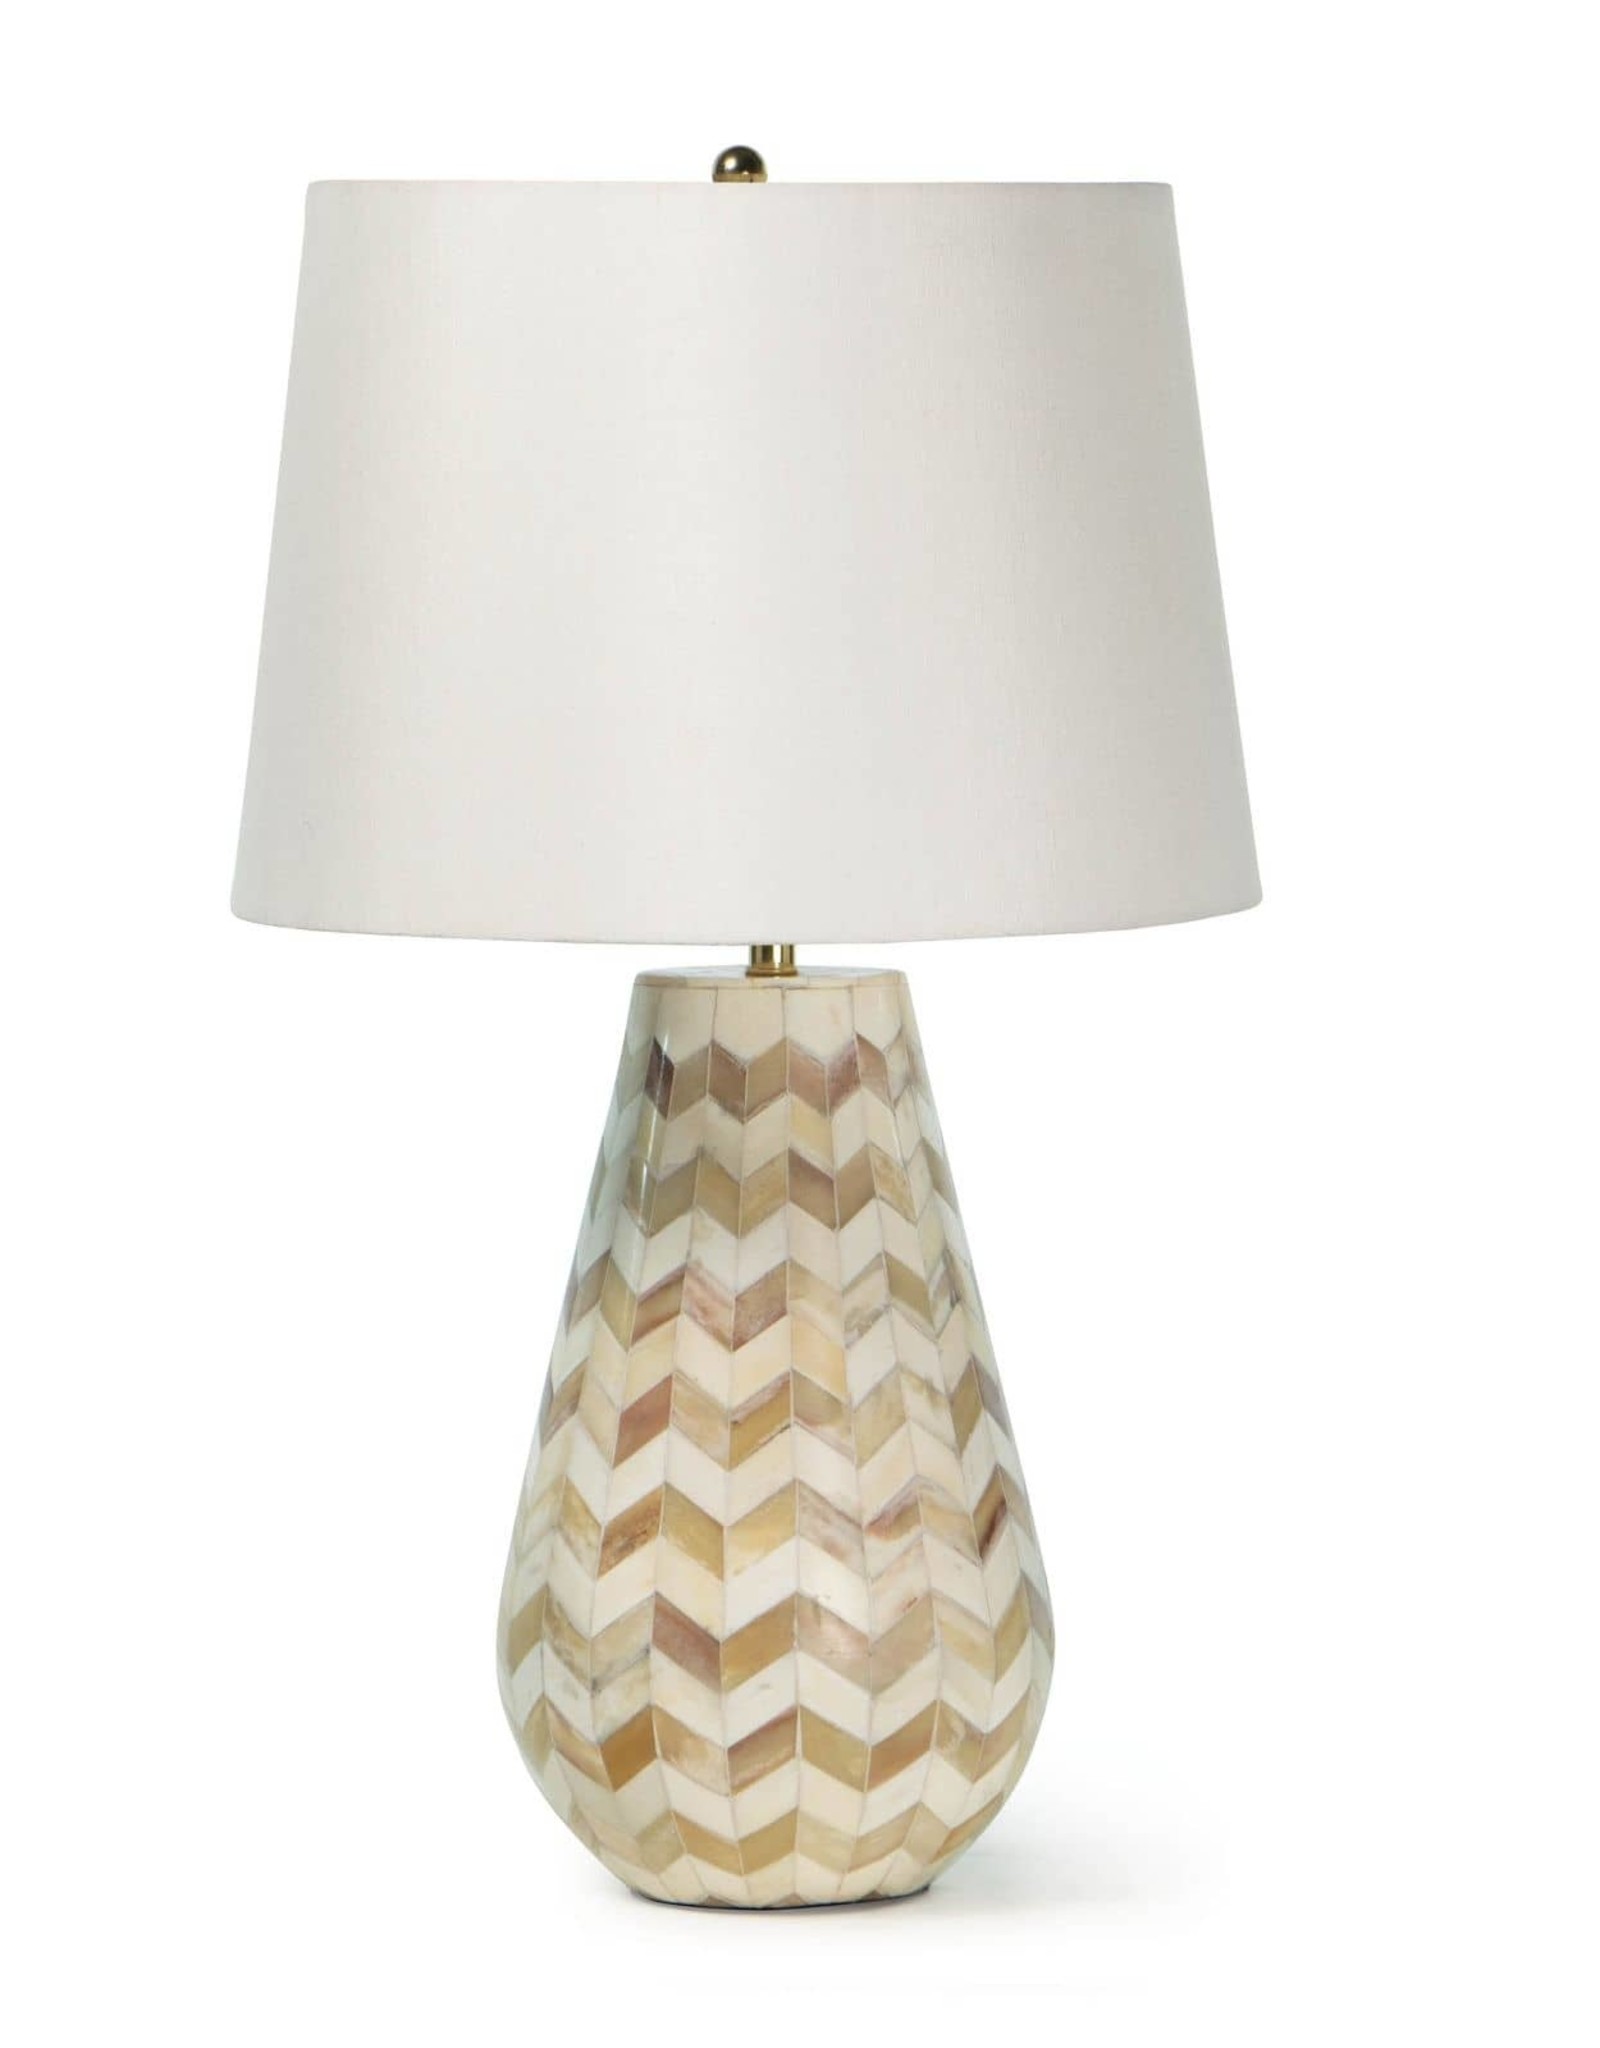 Regina Andrew Design Cassia Chevron Table Lamp (Natural)